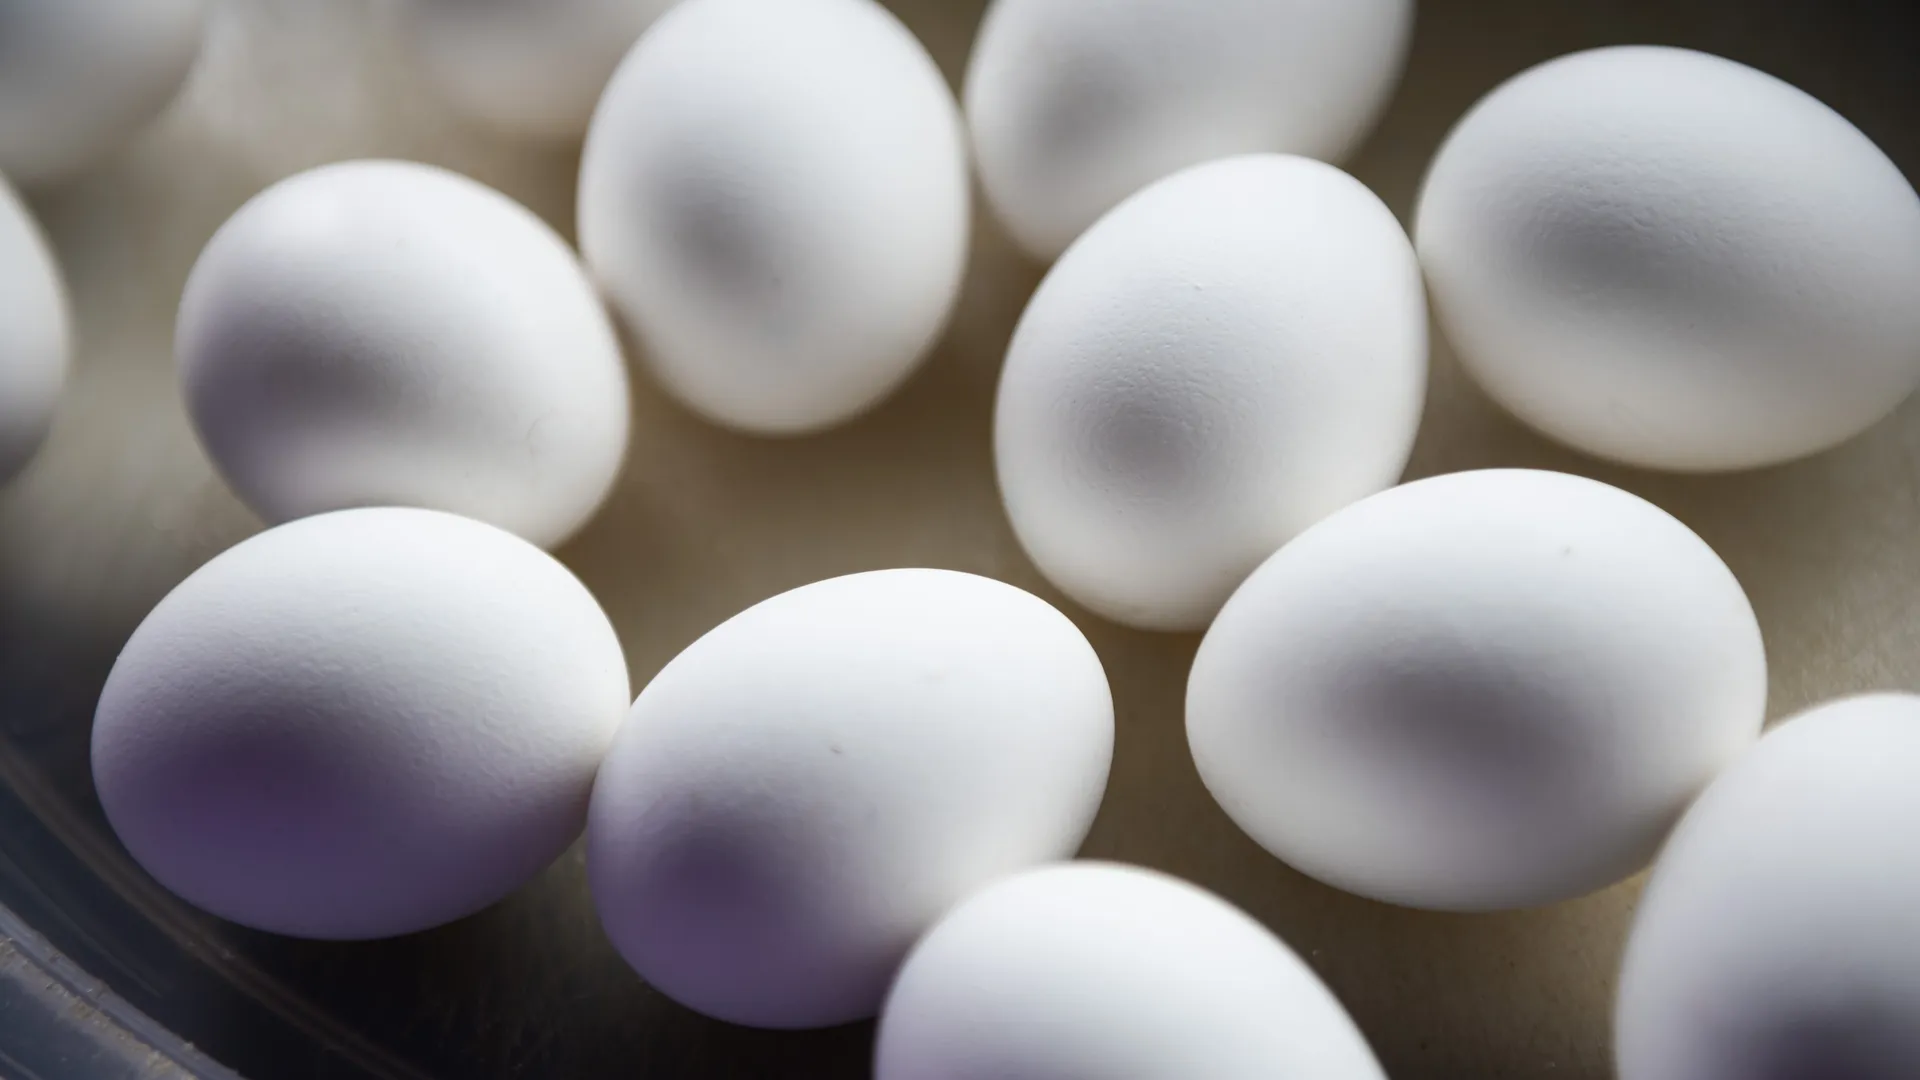 ФАС РФ начала проверки цен на яйца в крупнейших торговых сетях